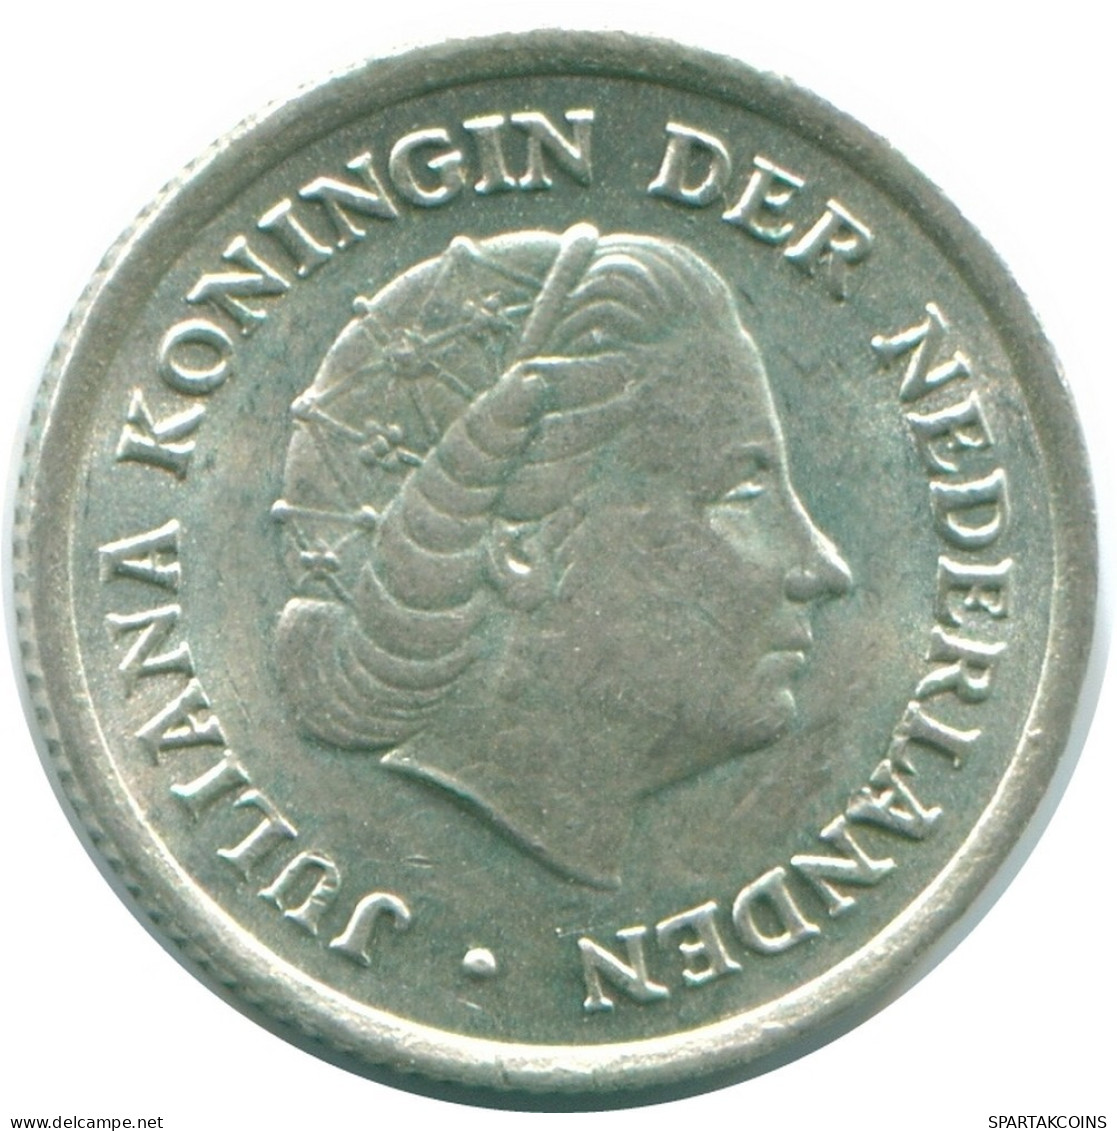 1/10 GULDEN 1966 NIEDERLÄNDISCHE ANTILLEN SILBER Koloniale Münze #NL12743.3.D.A - Niederländische Antillen